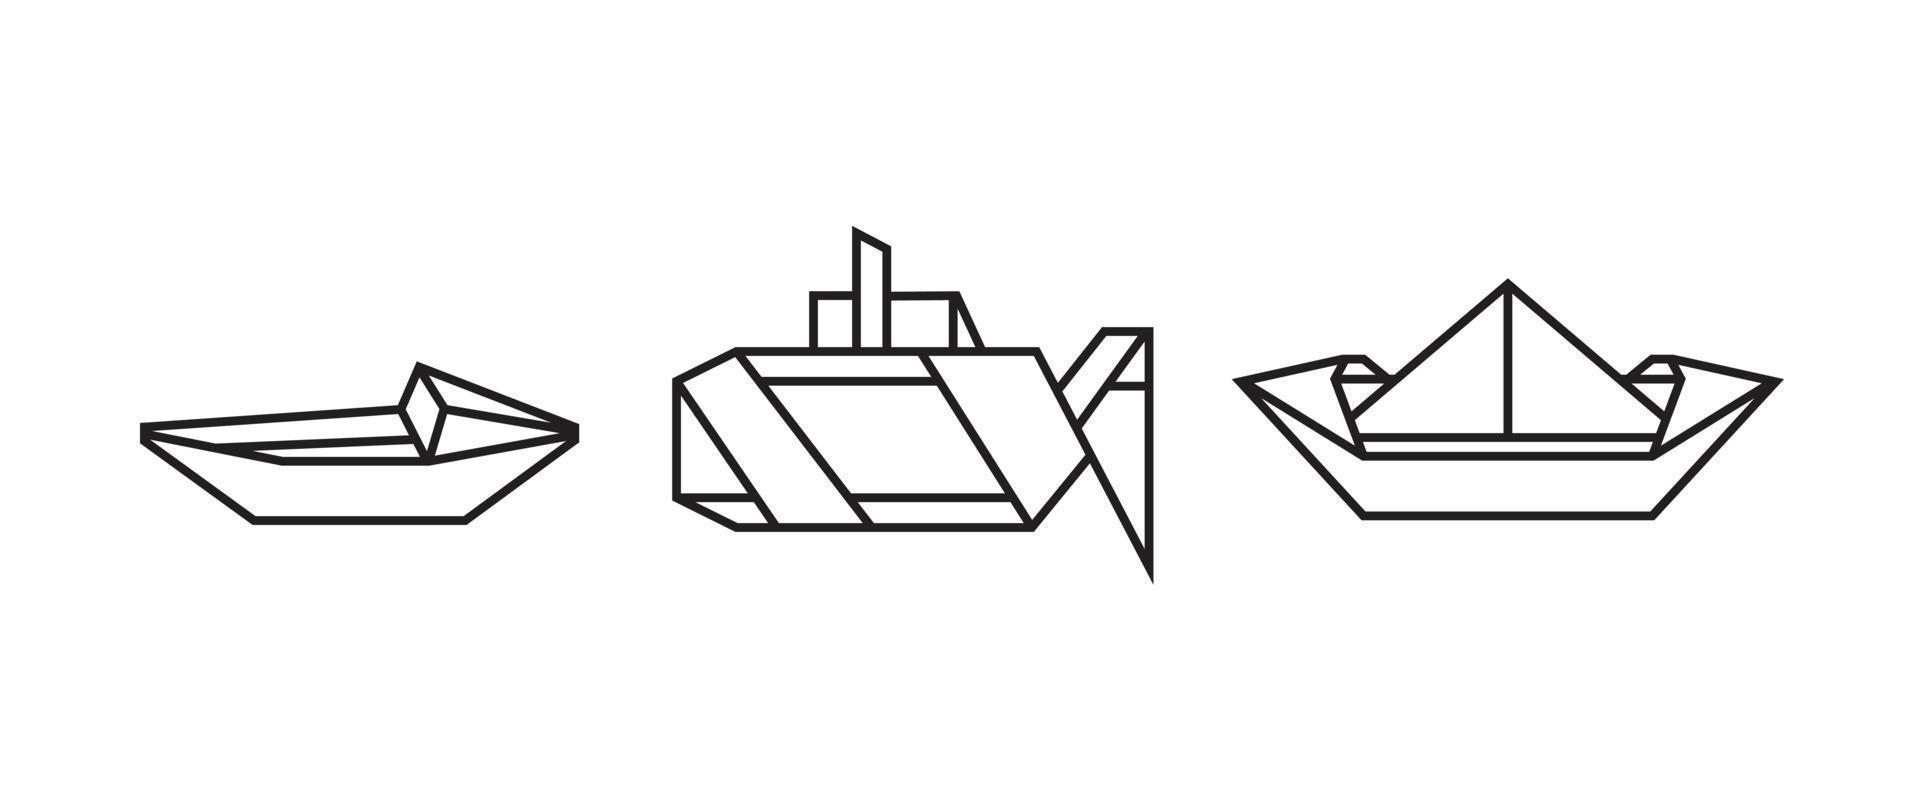 ilustraciones de barcos en estilo origami vector